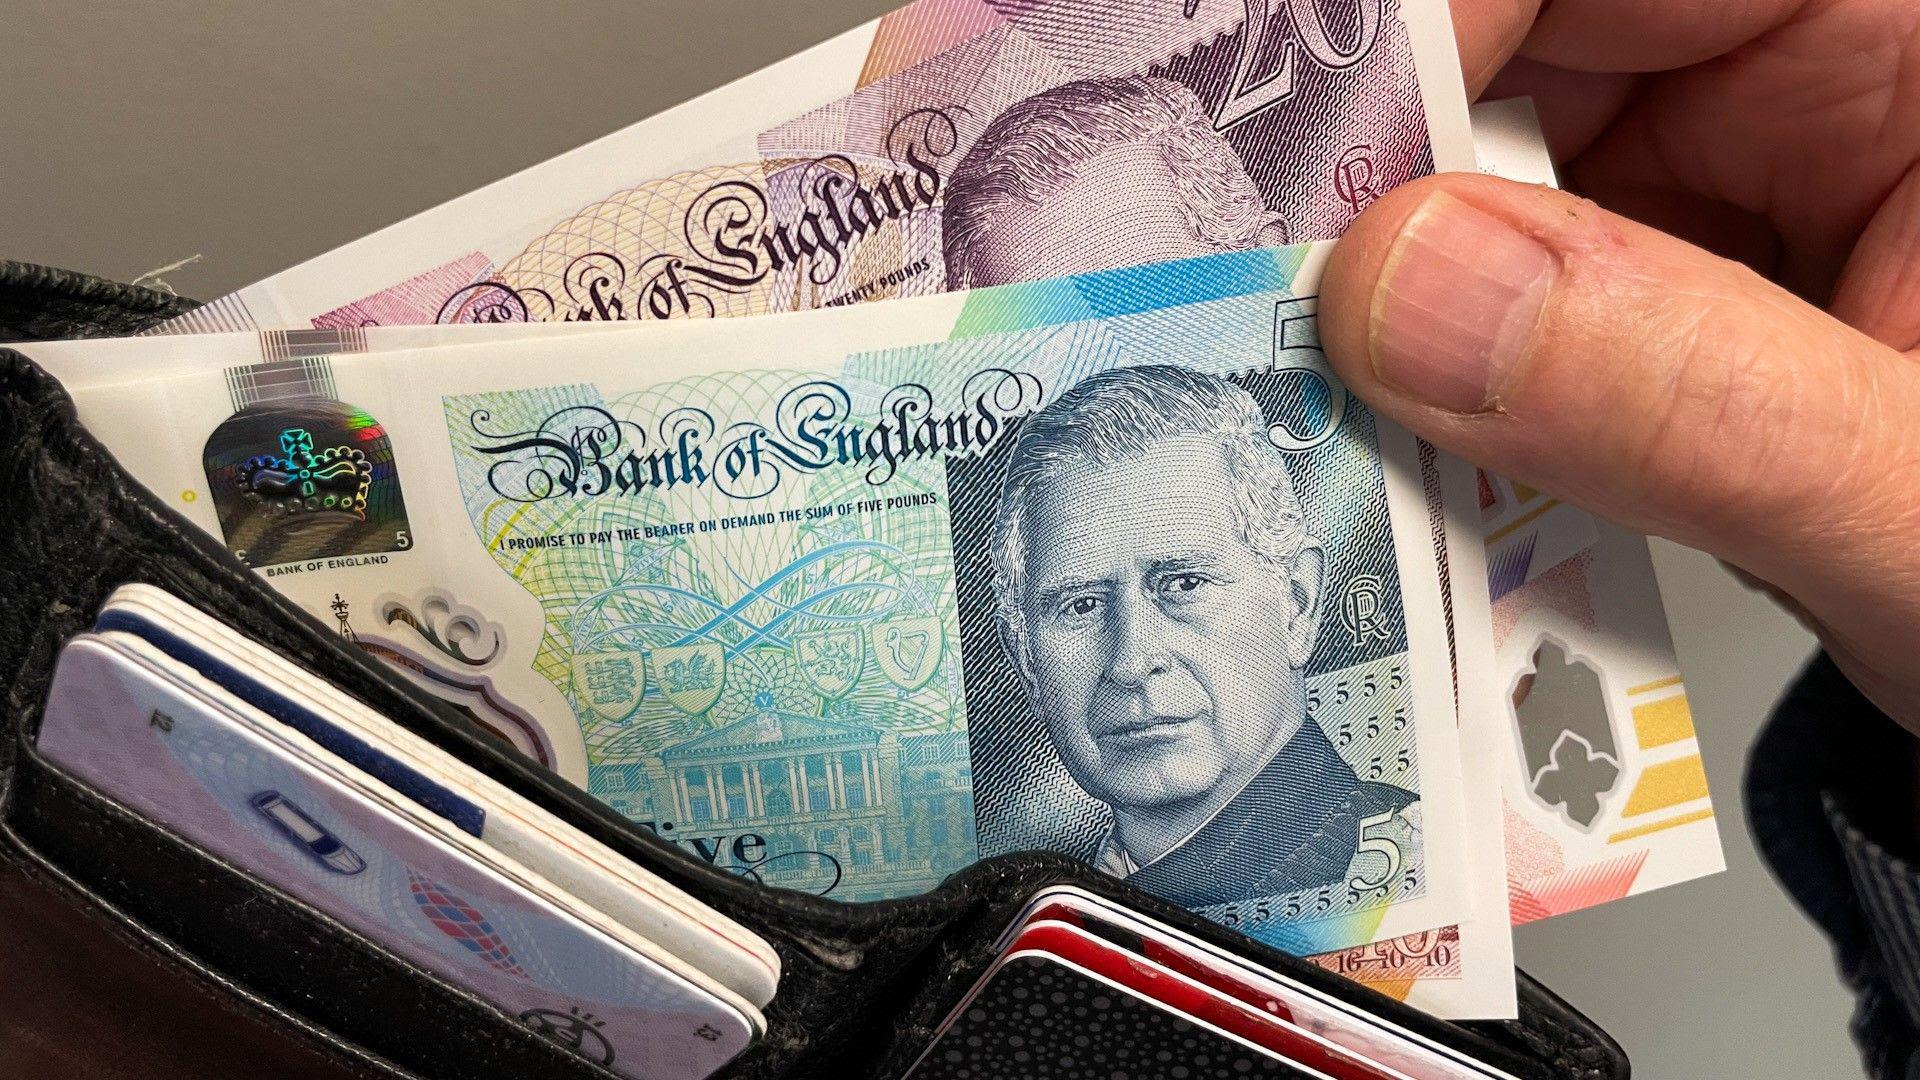 King Charles banknotes enter circulation